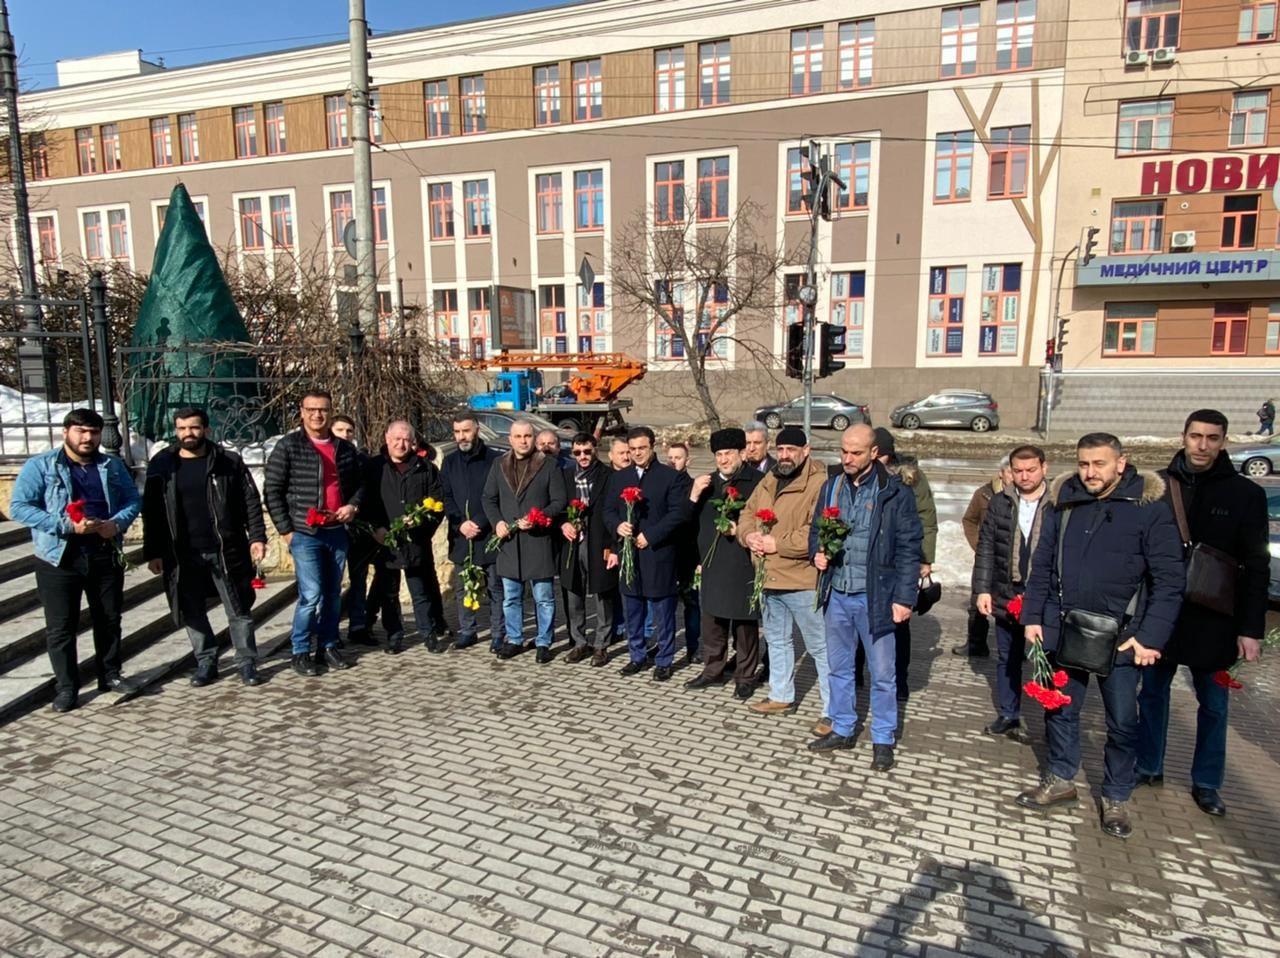 Kiyevdə Xocalı soyqırımı qurbanları yad edilib - FOTO